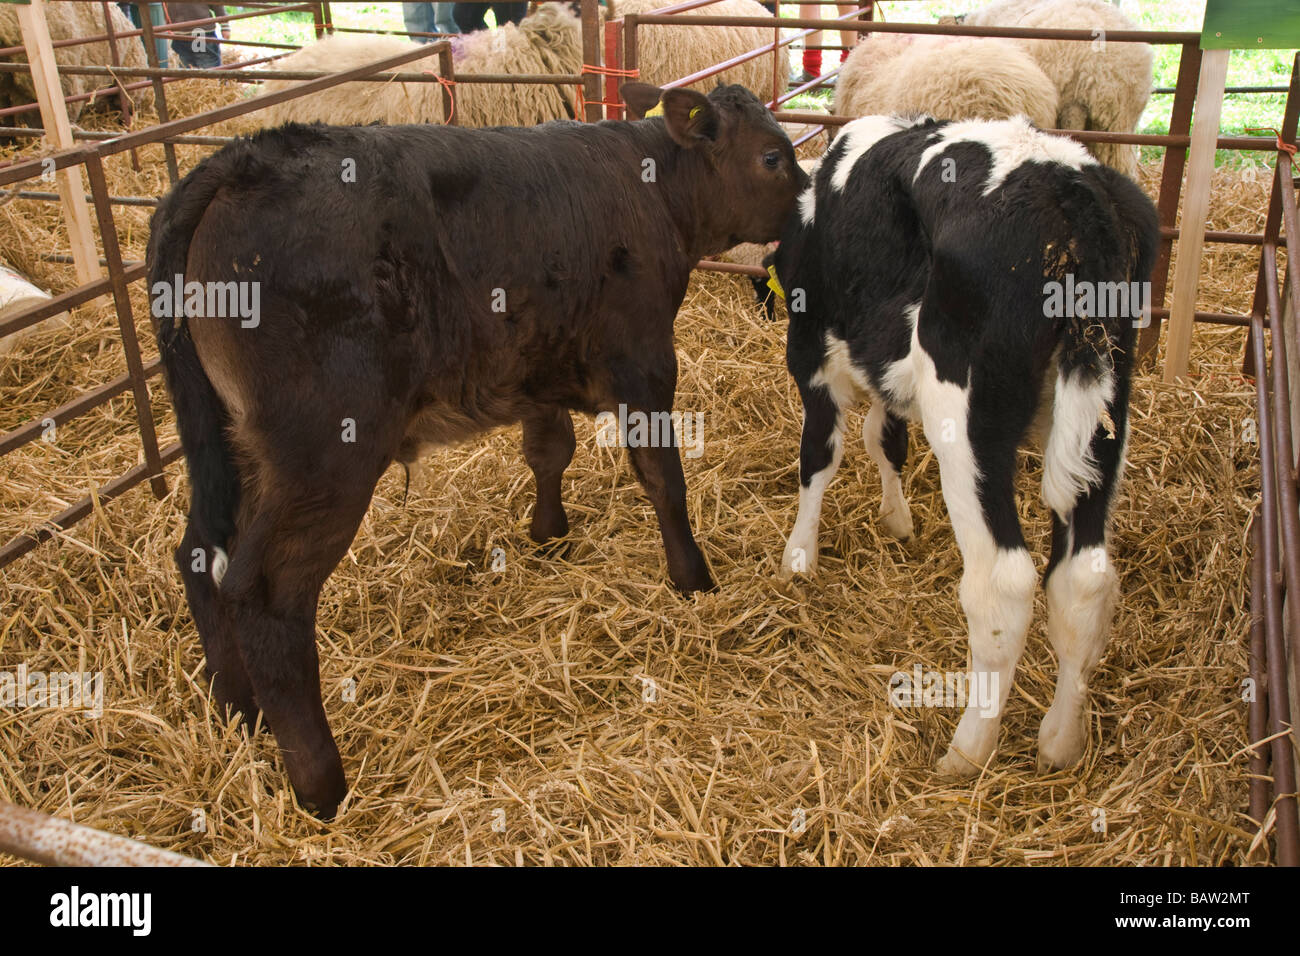 Zwei junge Kälber, man ein Rind-Kalb, das andere ein Holstein Molkerei Kalb. In Stift zum Vergleich zusammen gelegt. Stockfoto